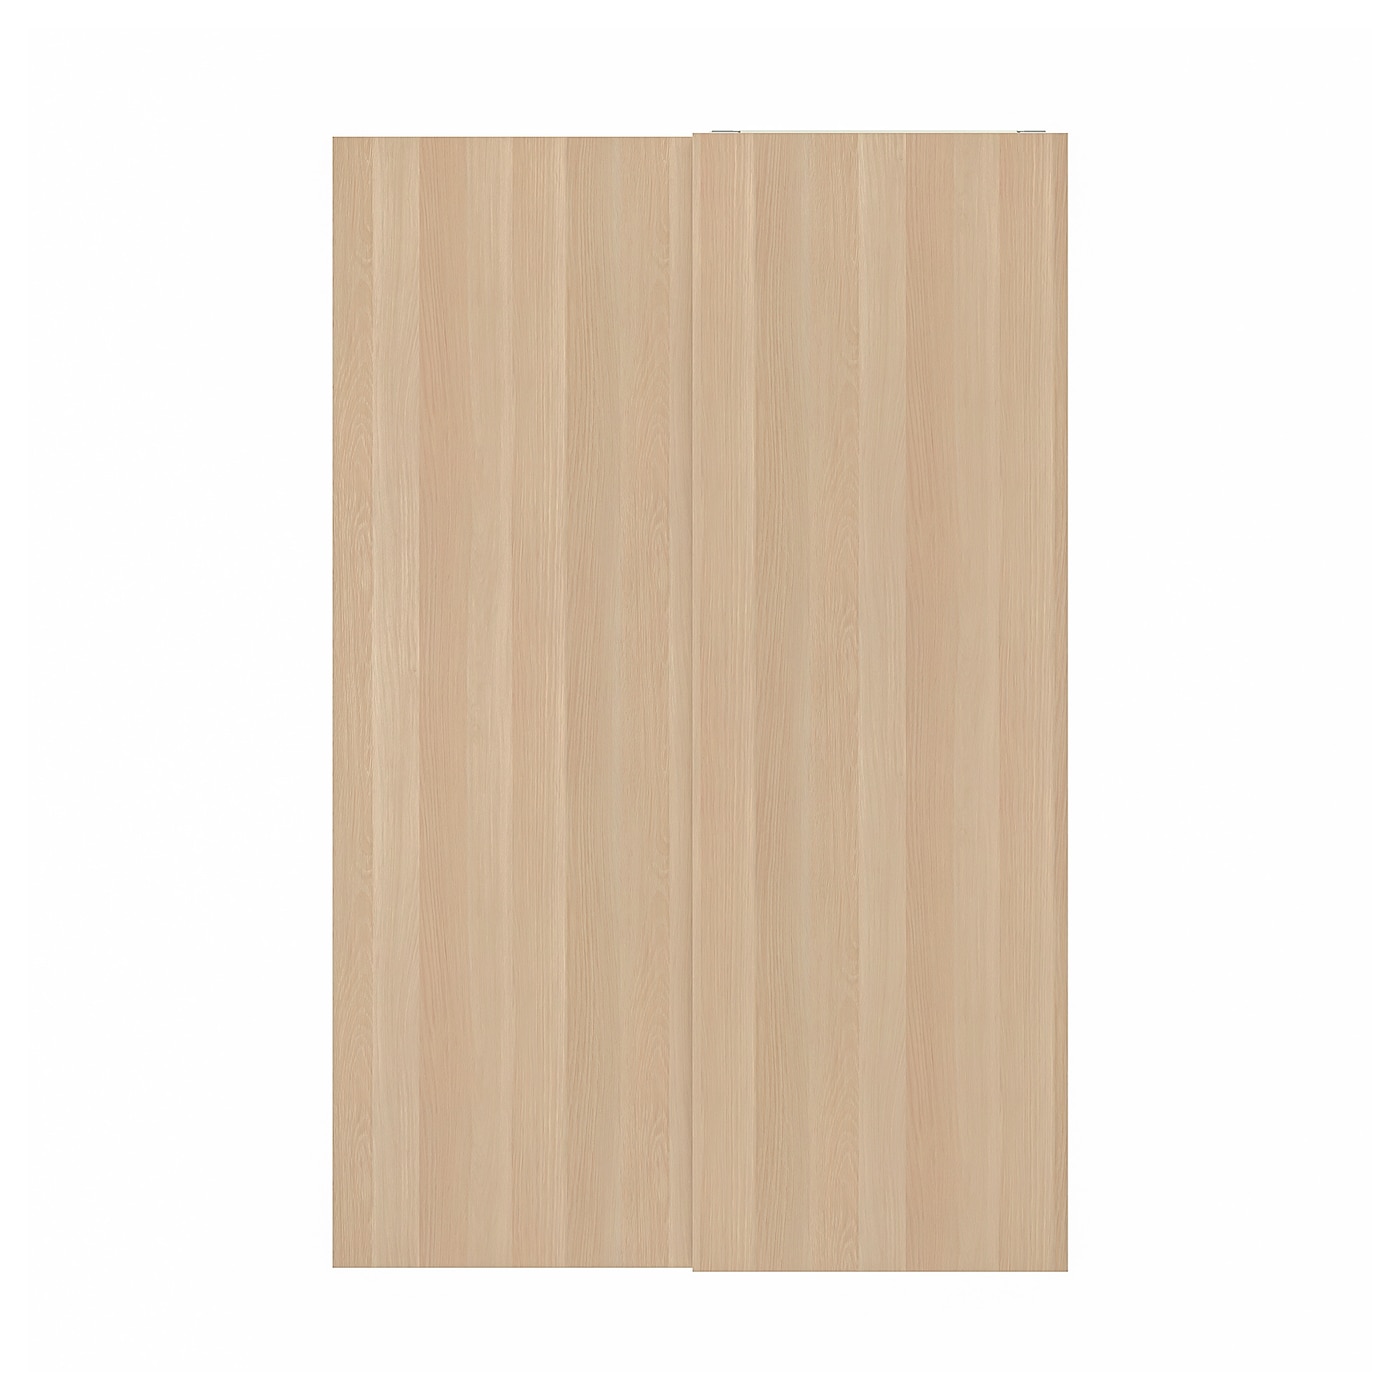 Пара рам раздвижных дверей - HASVIK IKEA/ ХАСВИК ИКЕА, 150х236 см, коричневый